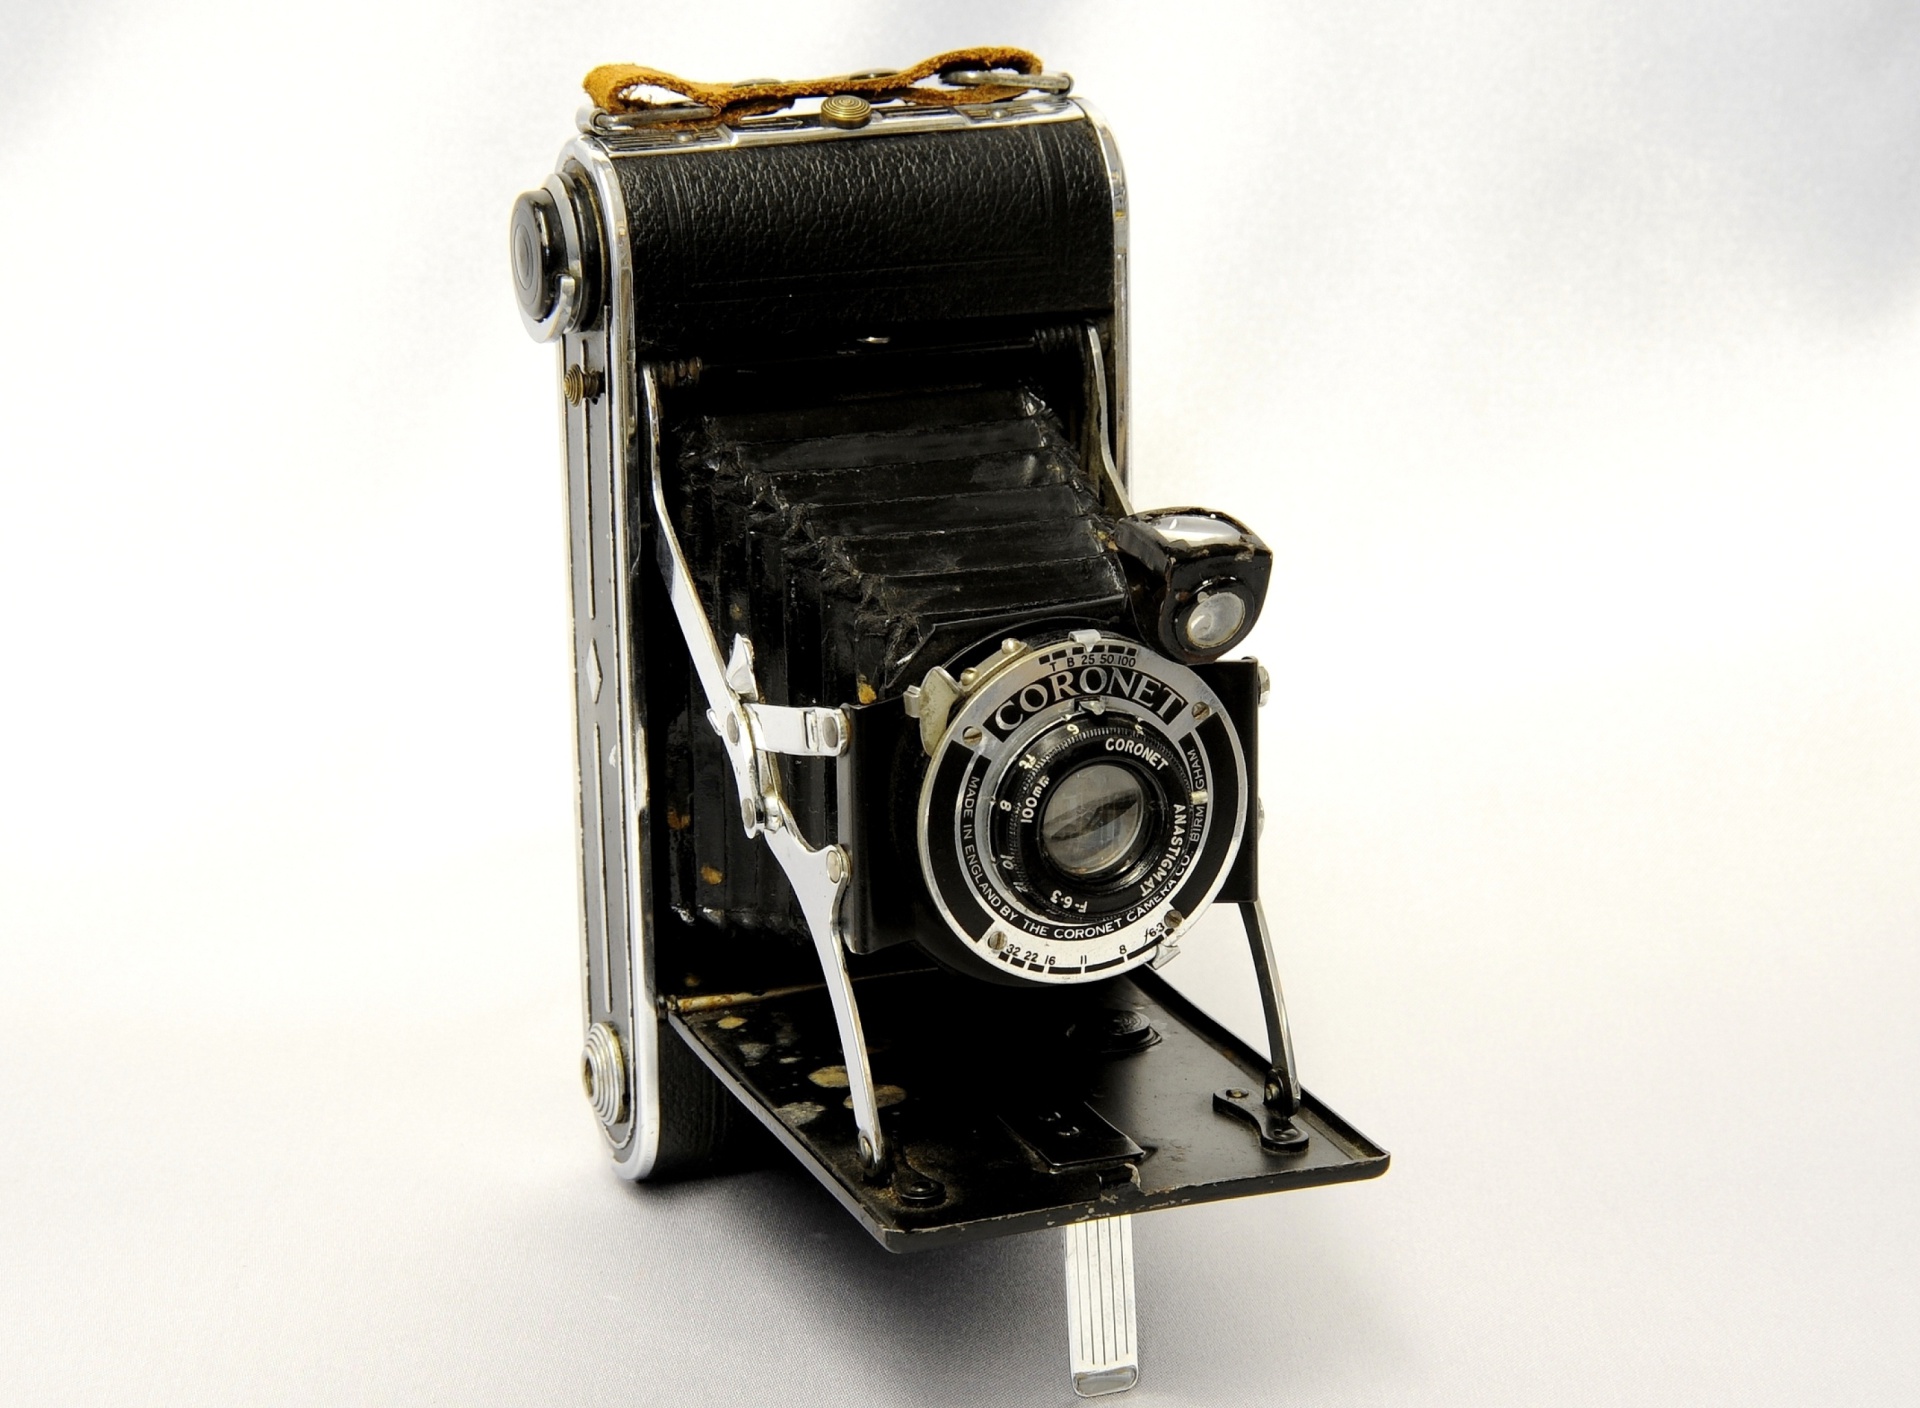 Sfondi Coronet Vintage Retro Camera 1920x1408